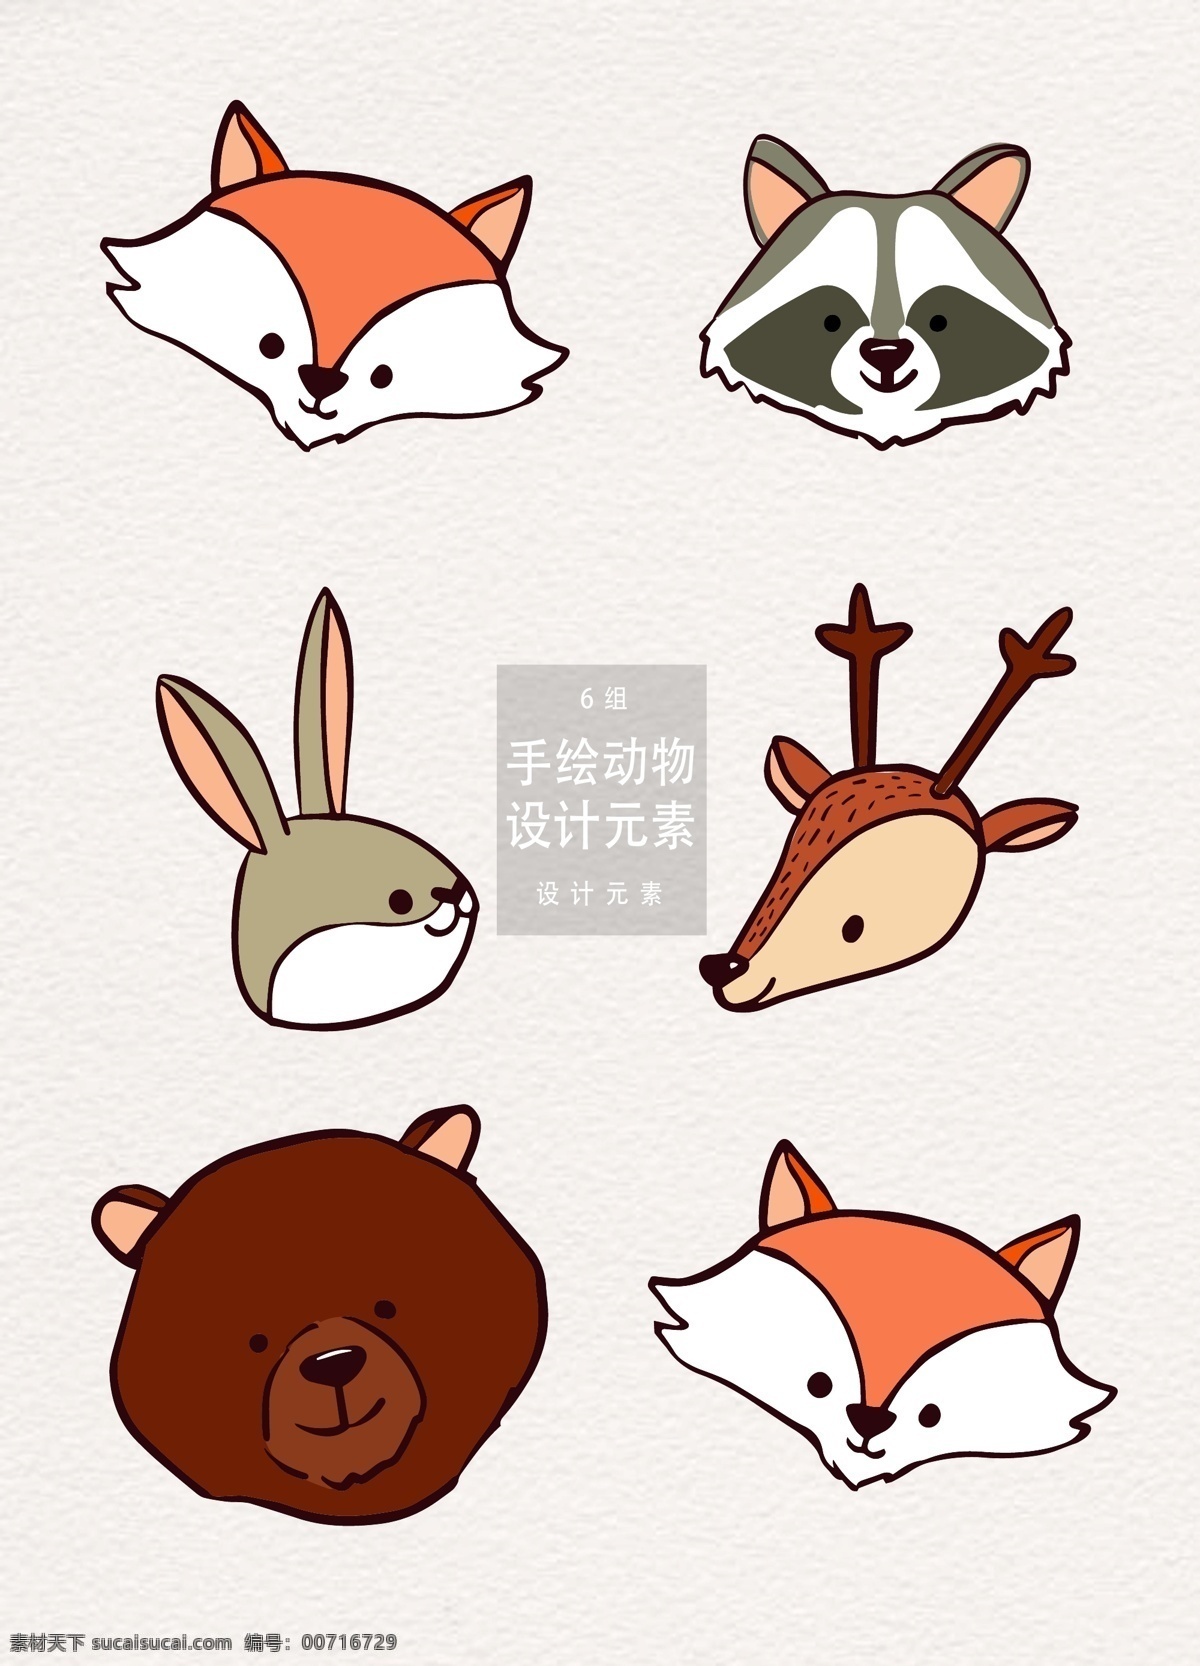 手绘 森林 动物 元素 设计元素 狐狸 兔子 森林动物 手绘动物 麋鹿 狗熊